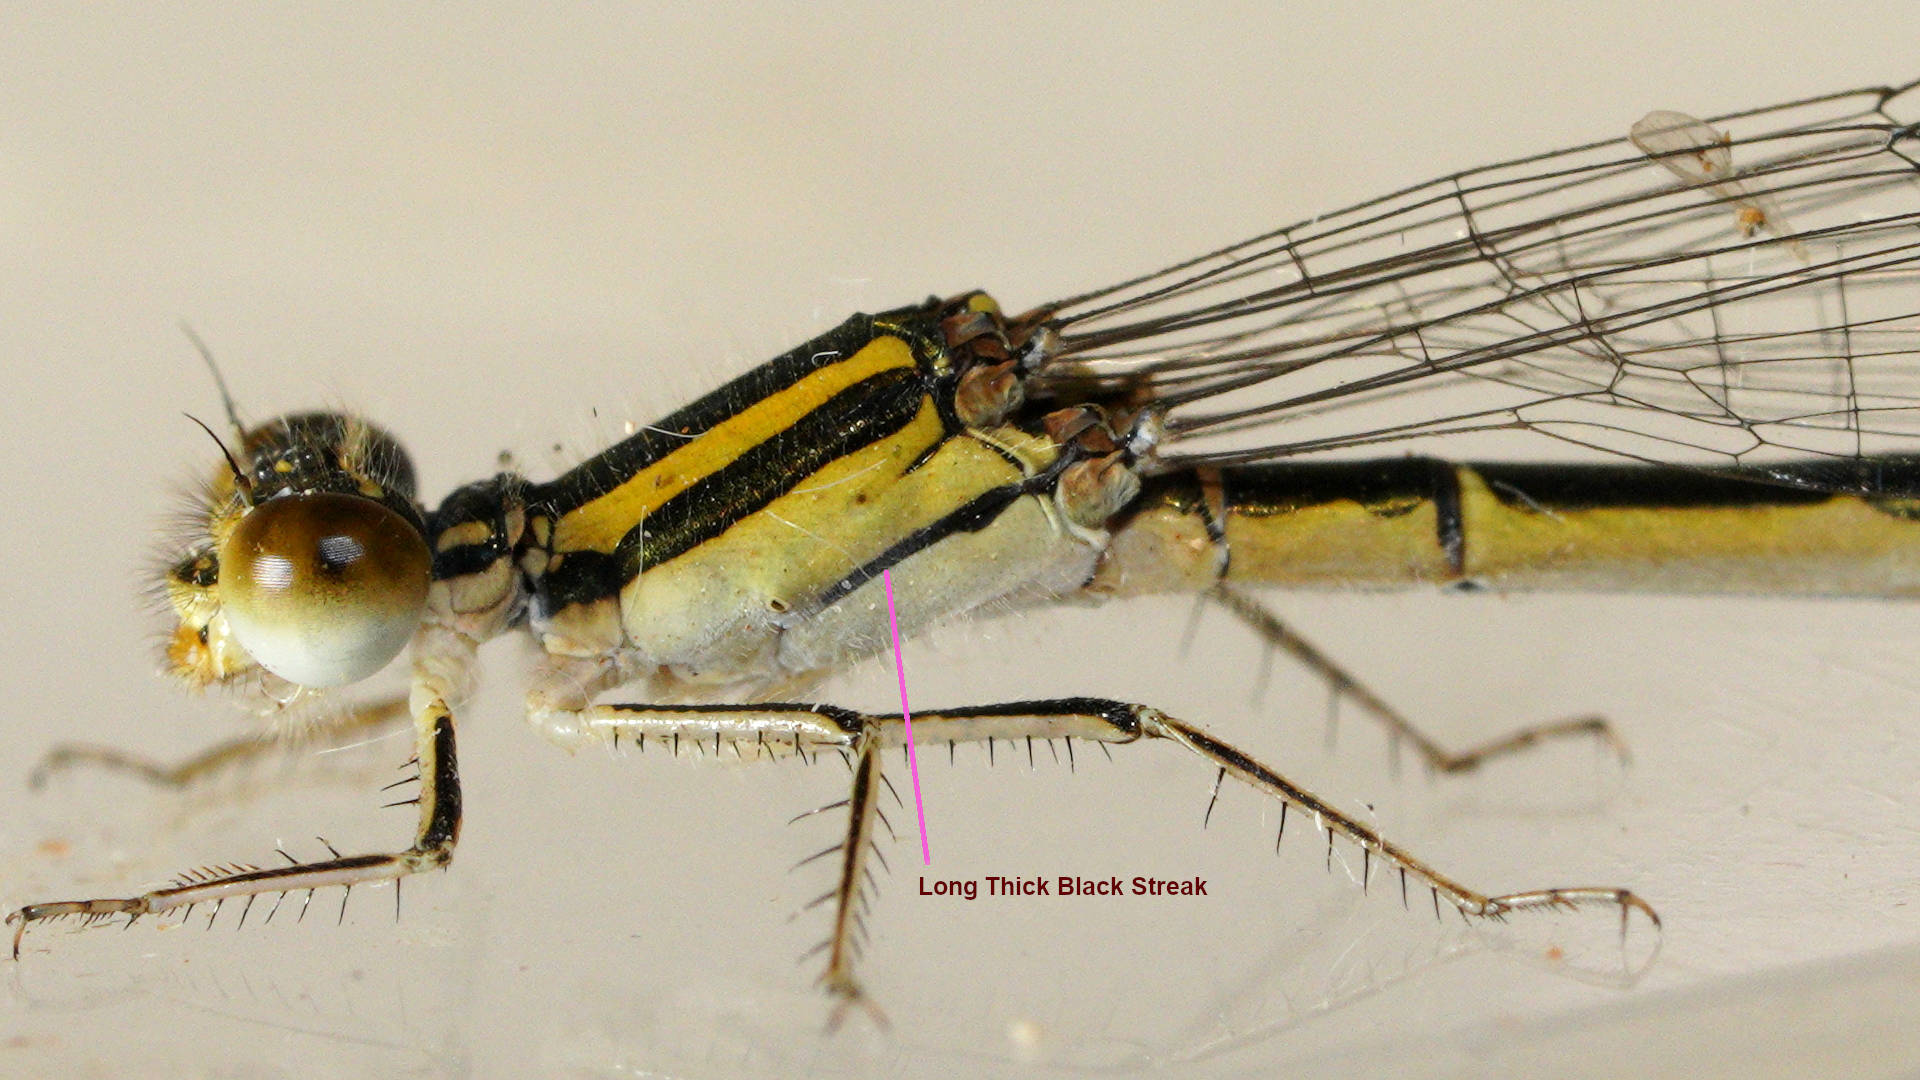 Eastern Billabongfly (Austroagrion watsoni)